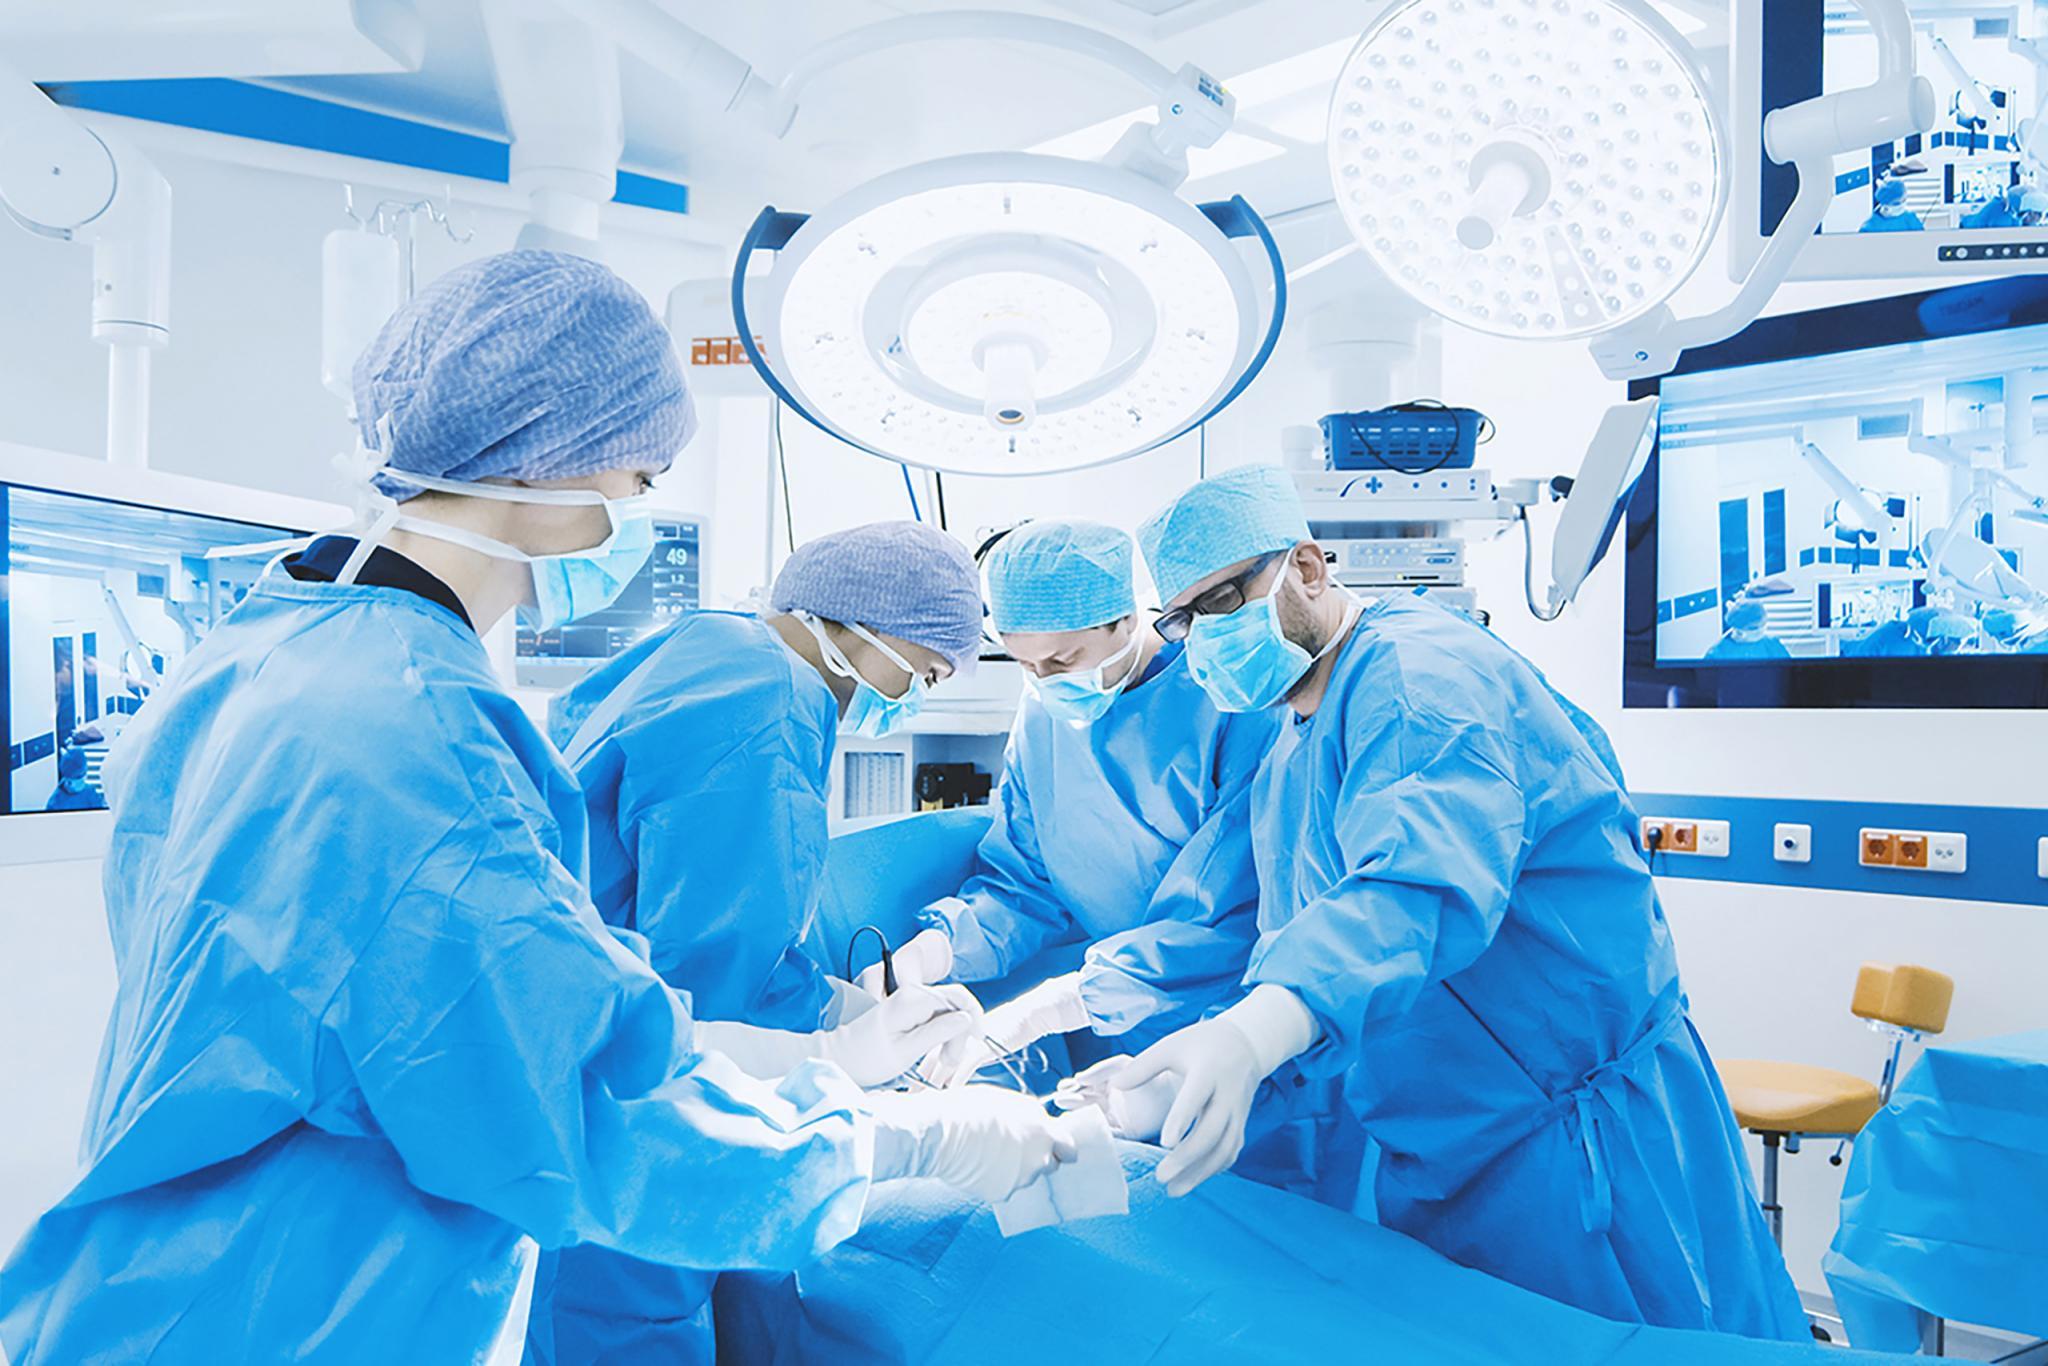 Steriles Verpackungsmaterial für chirurgische Eingriffe